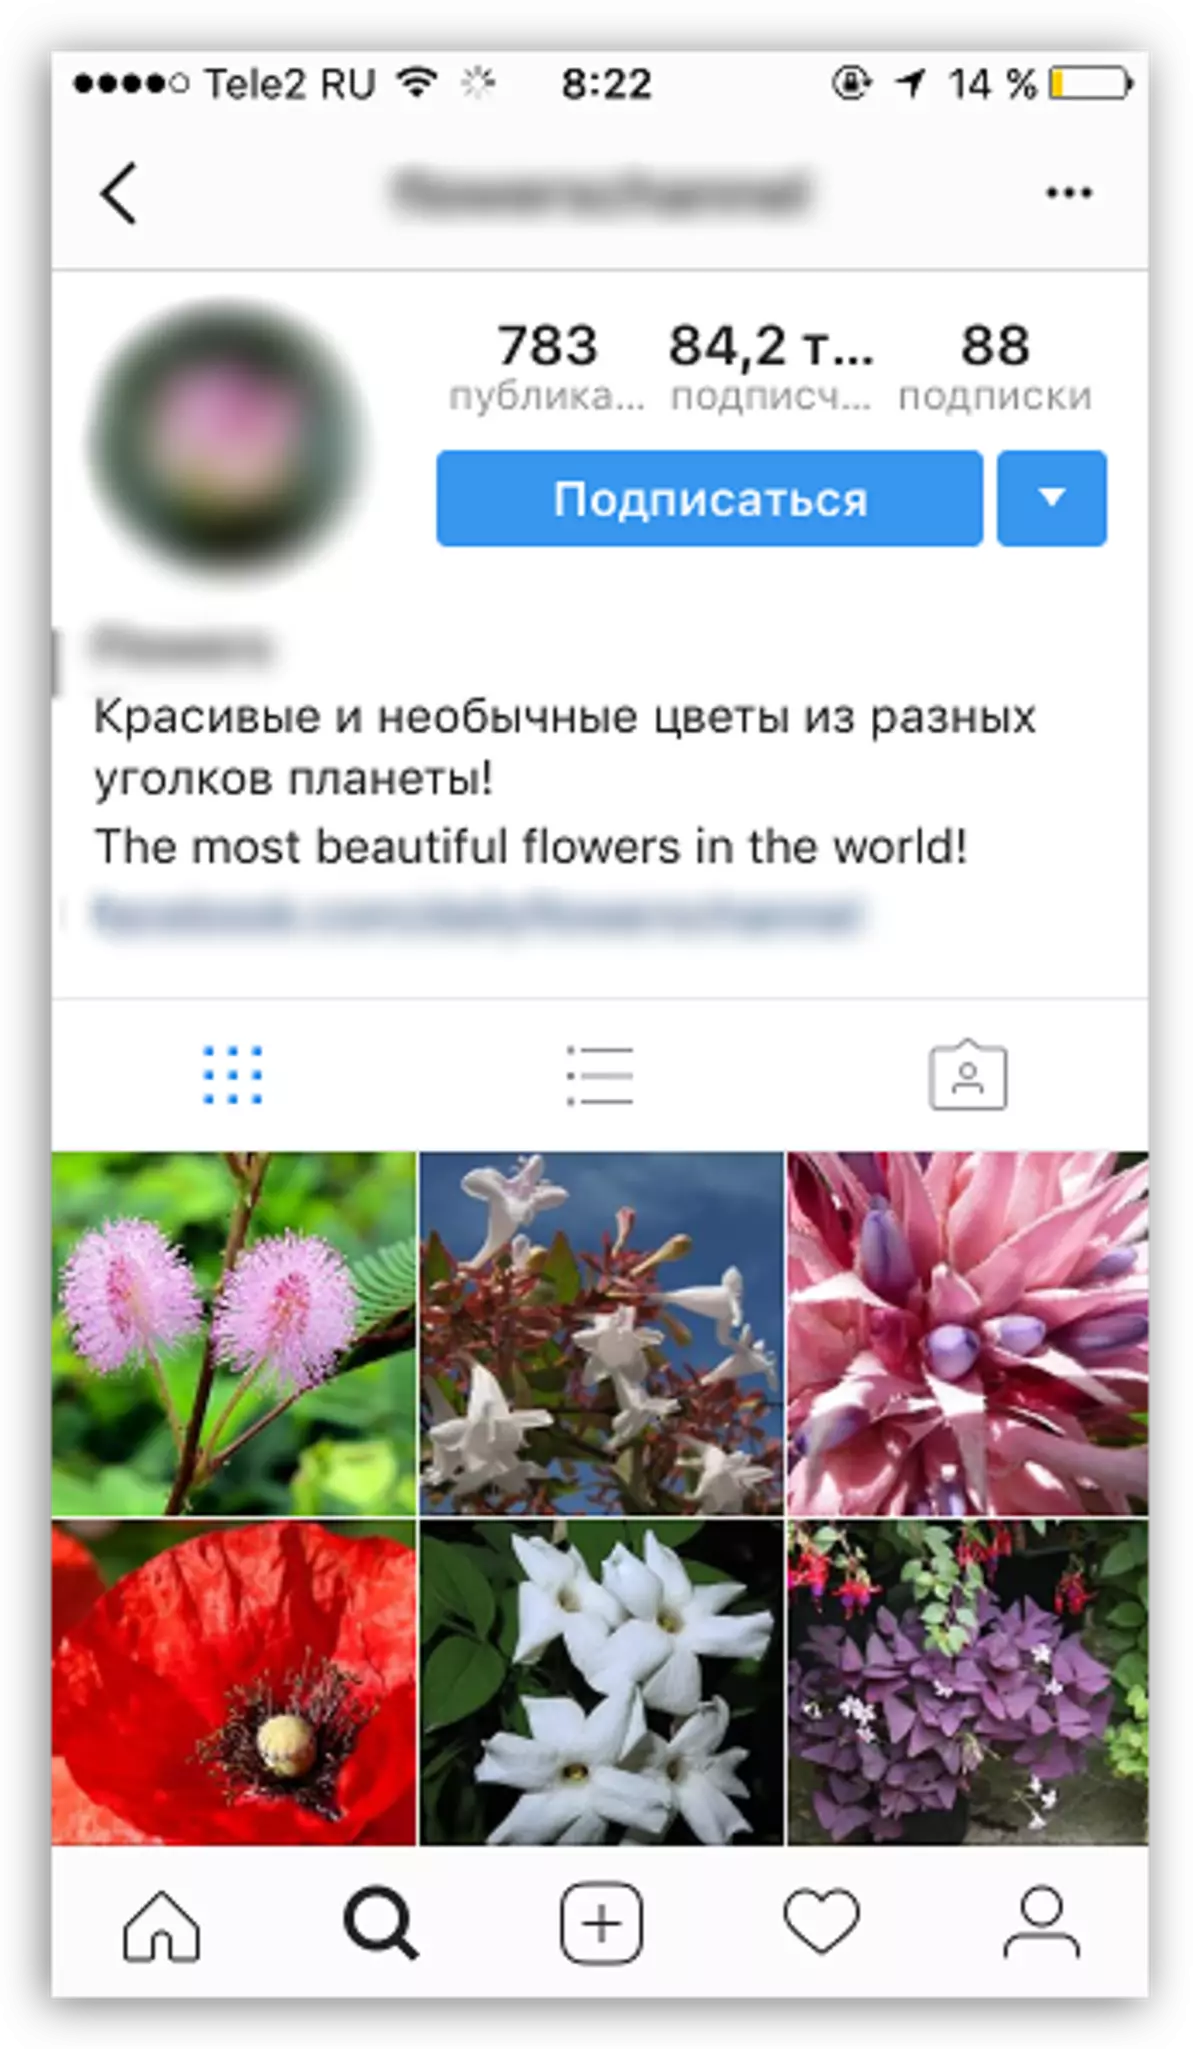 Подписать фото с цветами в инстаграме красиво